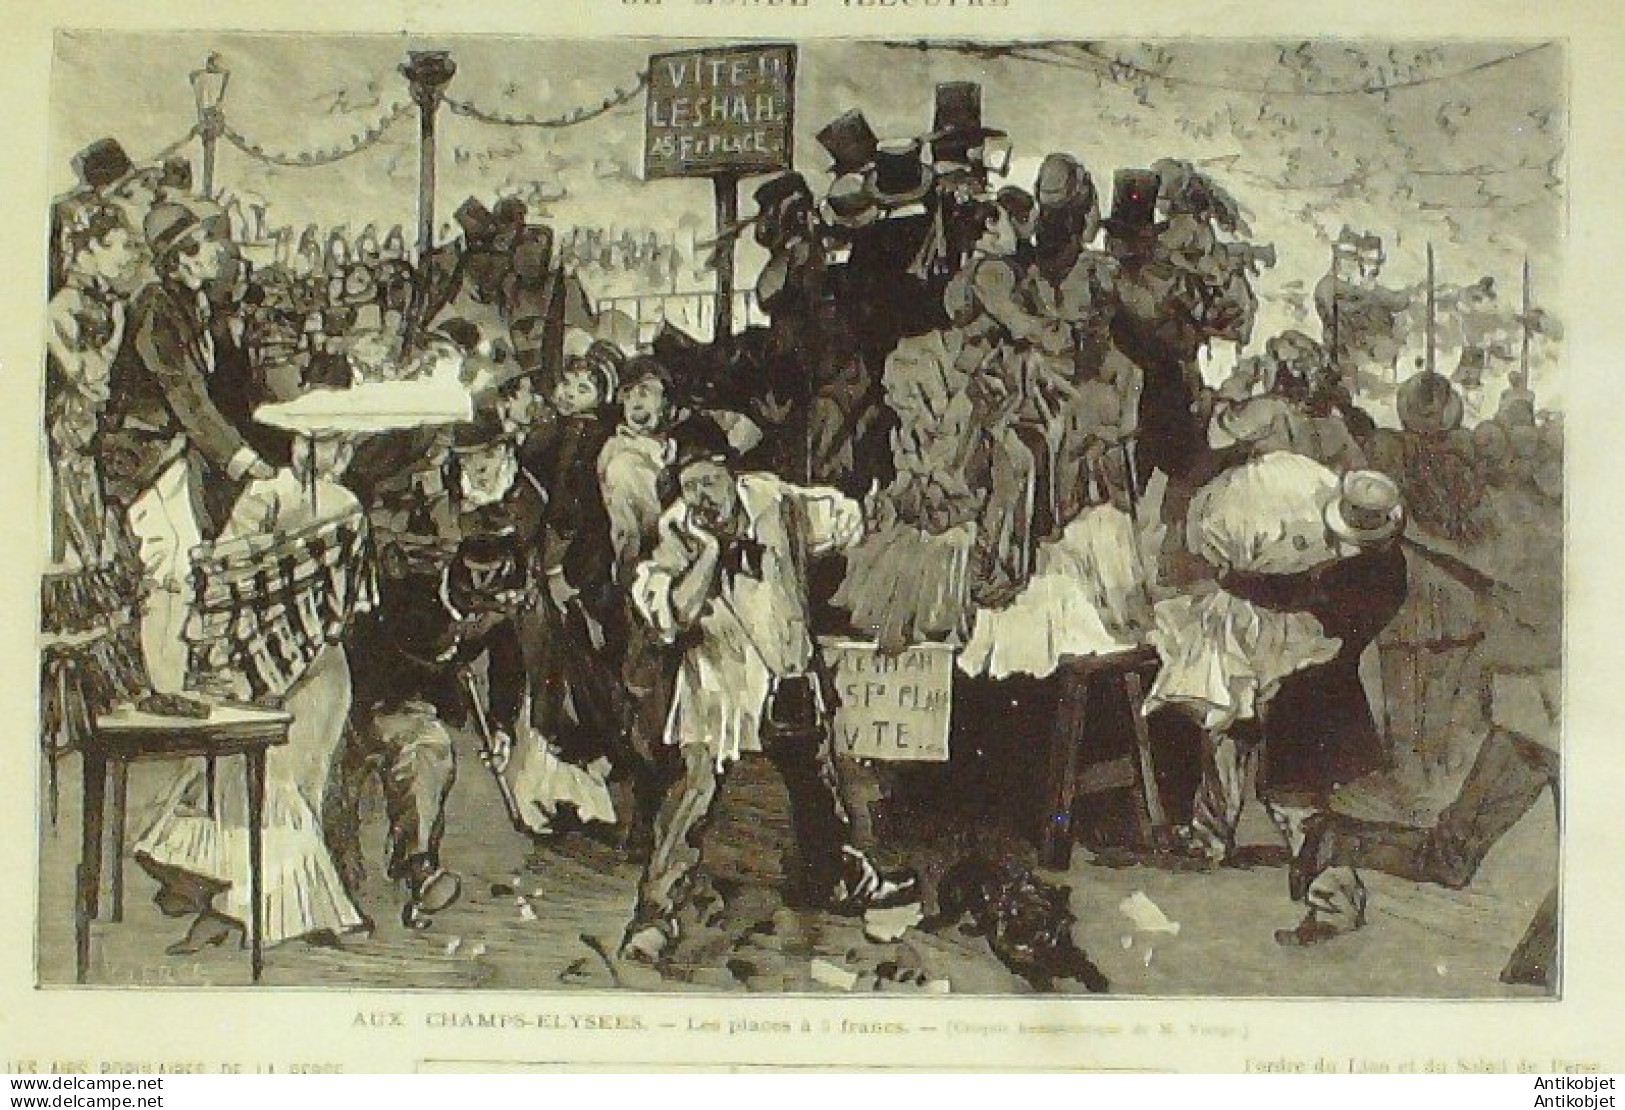 Le Monde Illustré 1873 N°848 Iran Shah De Perse Cherbourg (50)  - 1850 - 1899